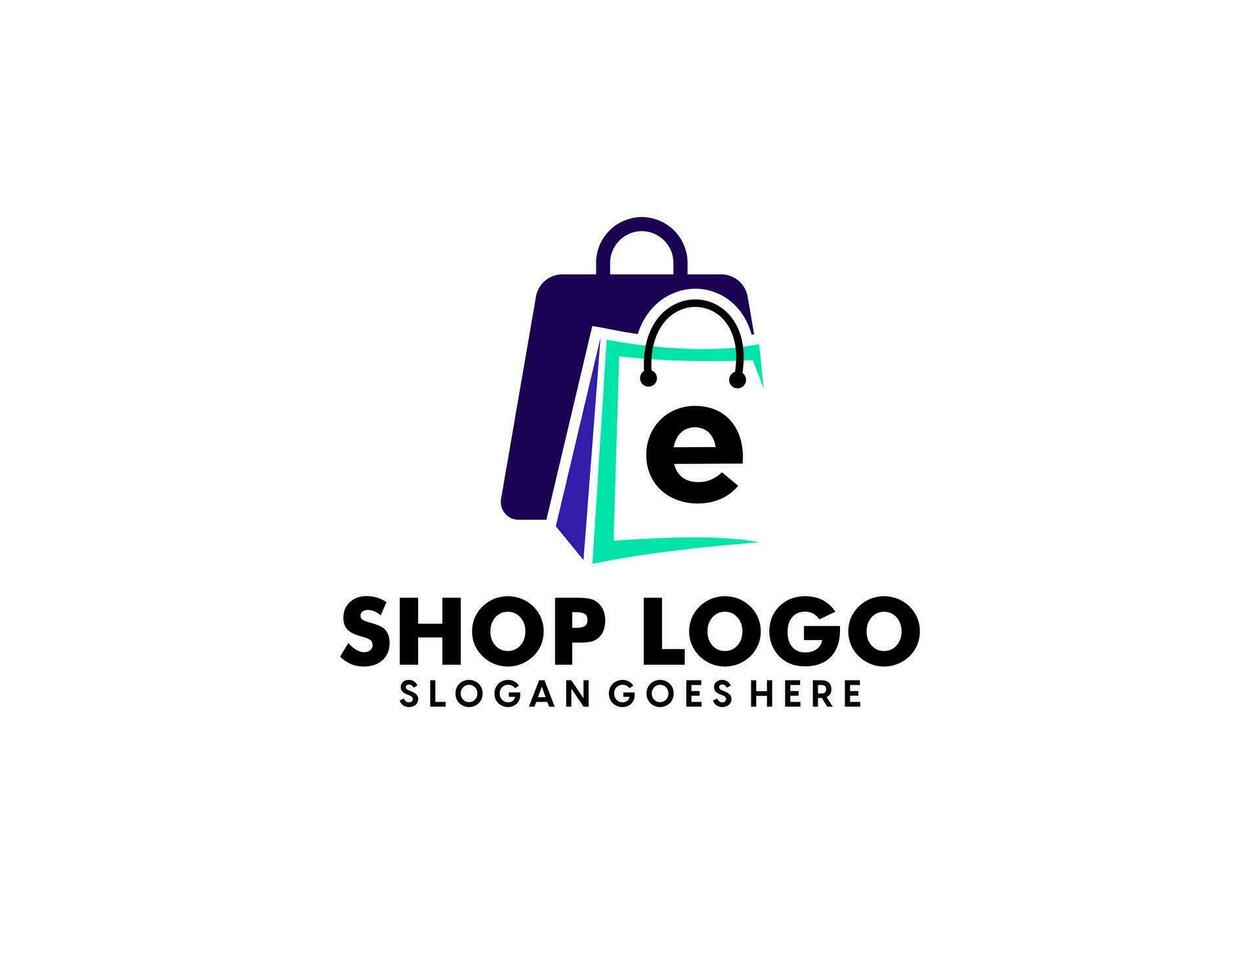 Online-Shop-Logo-Designs-Vorlage, Vektorillustration vektor